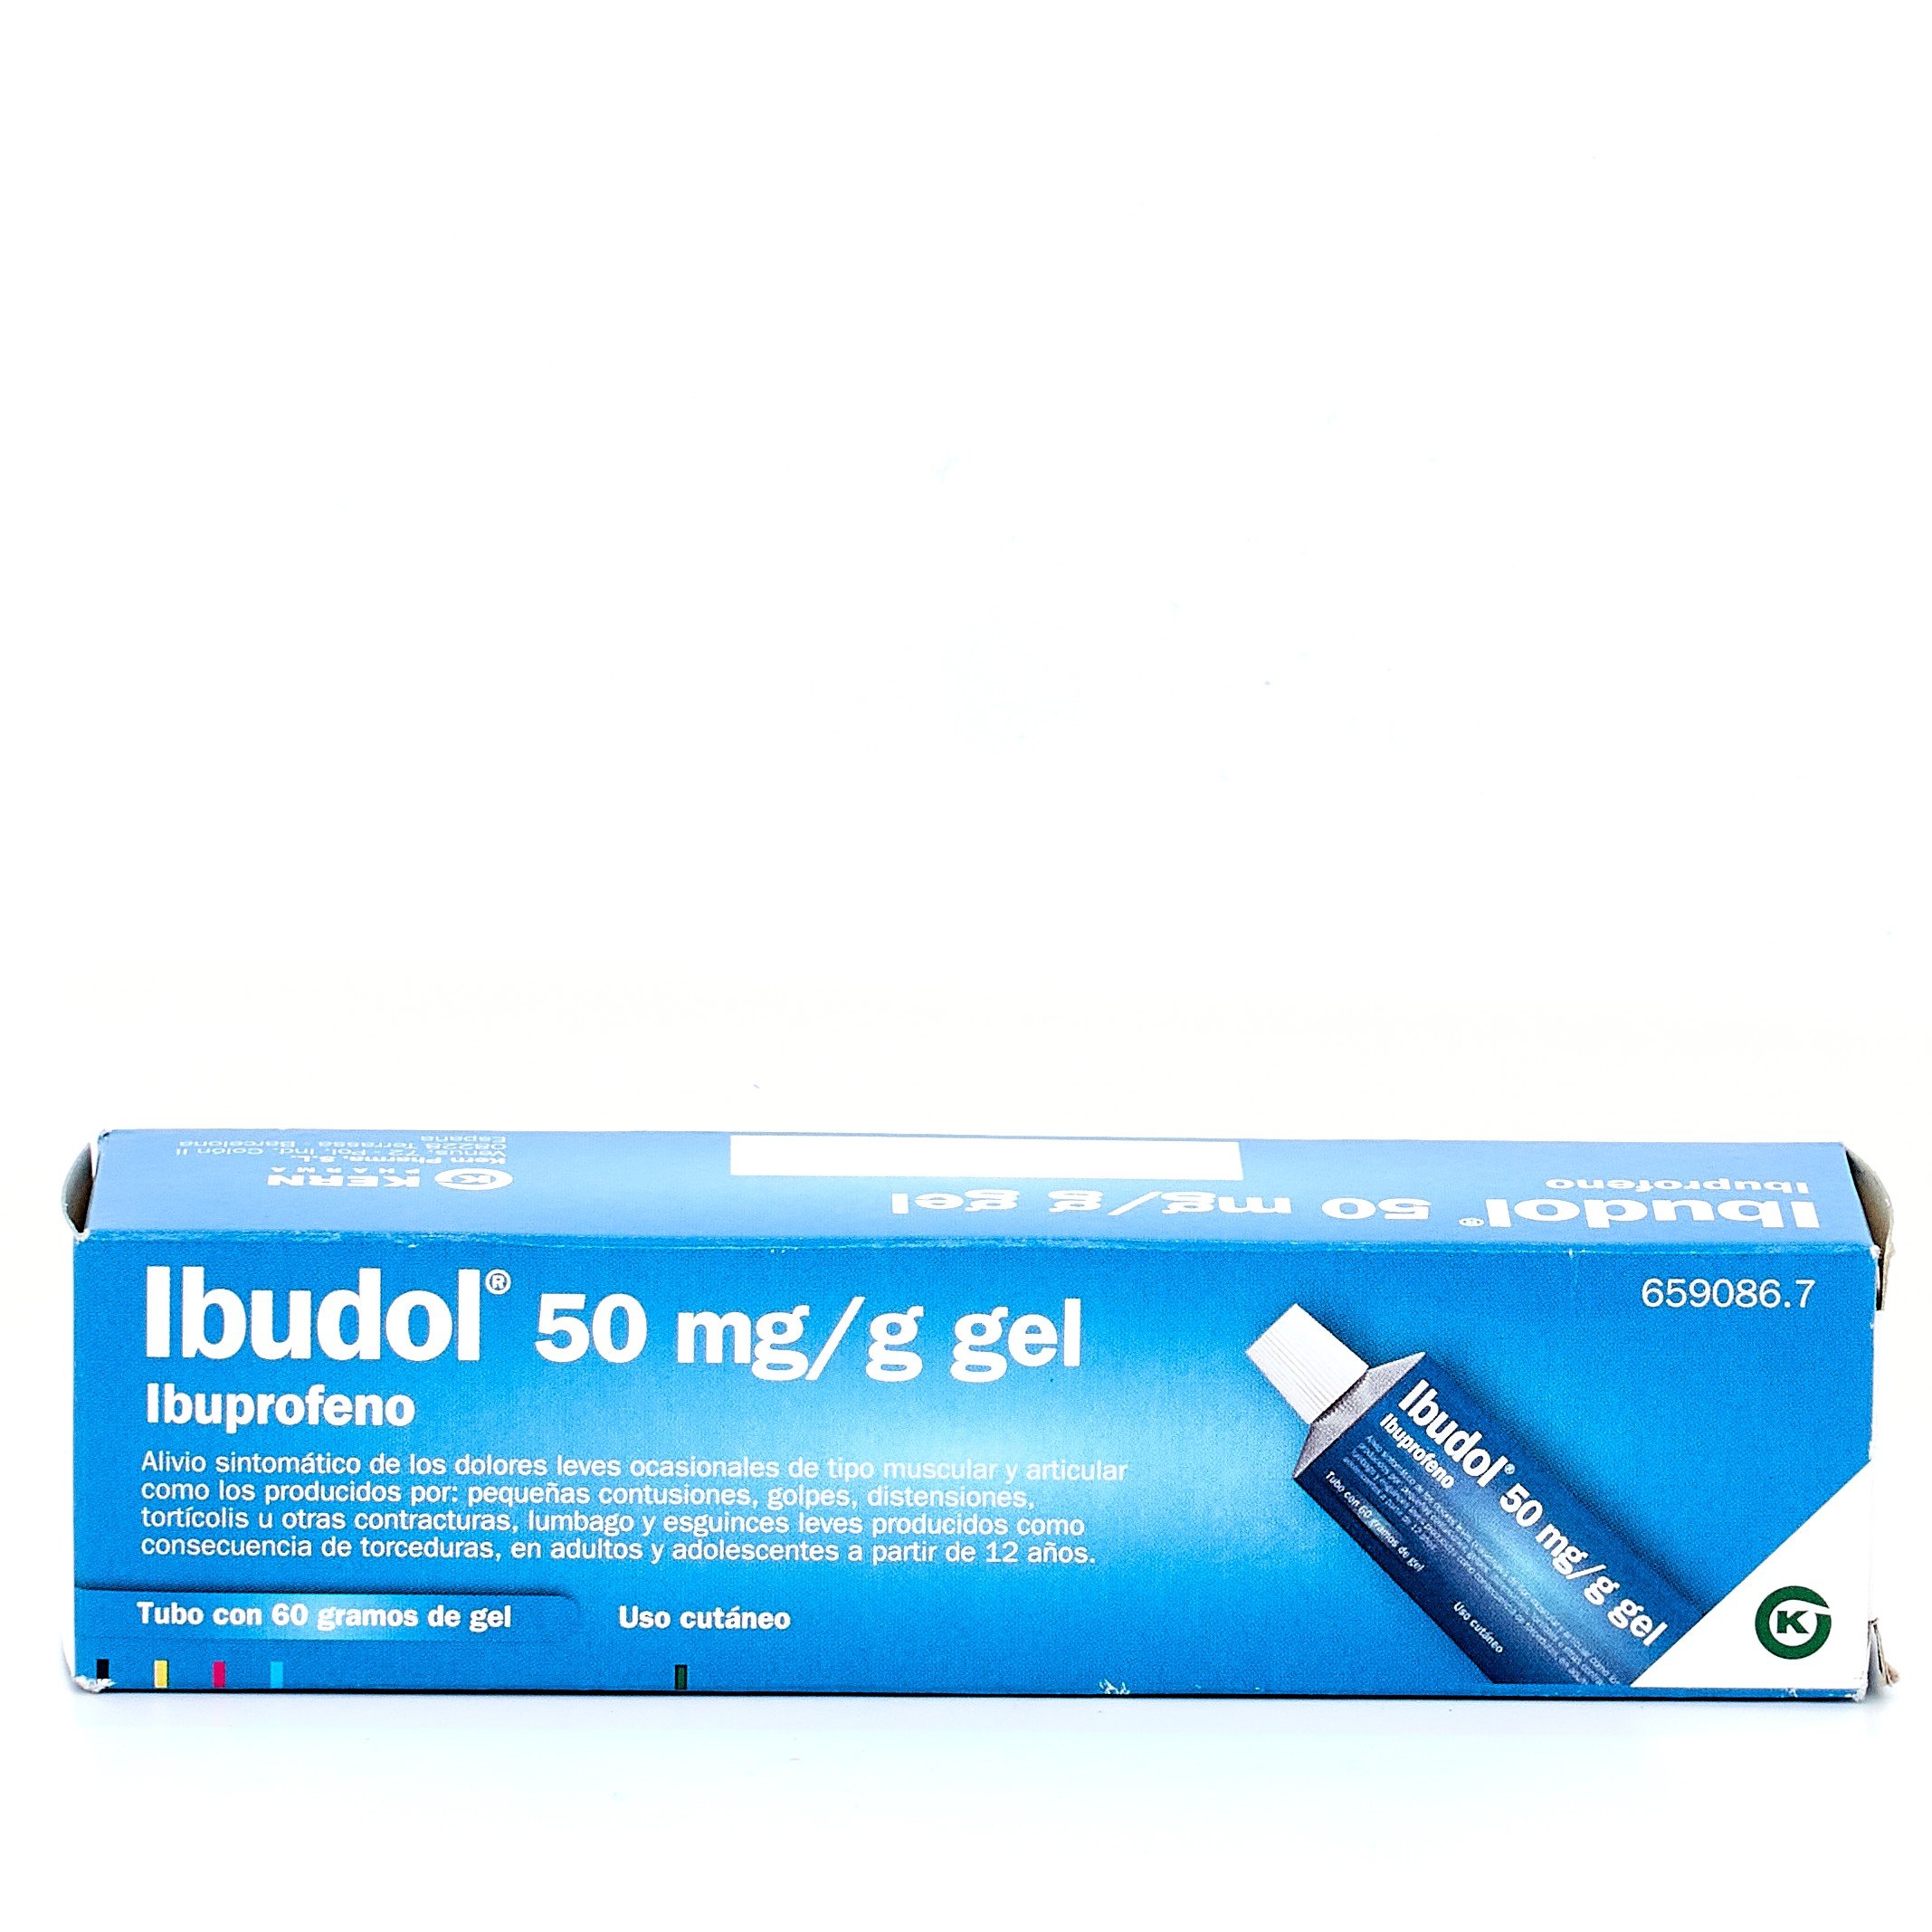 Ibudol 50 mg/g gel, 60gr.